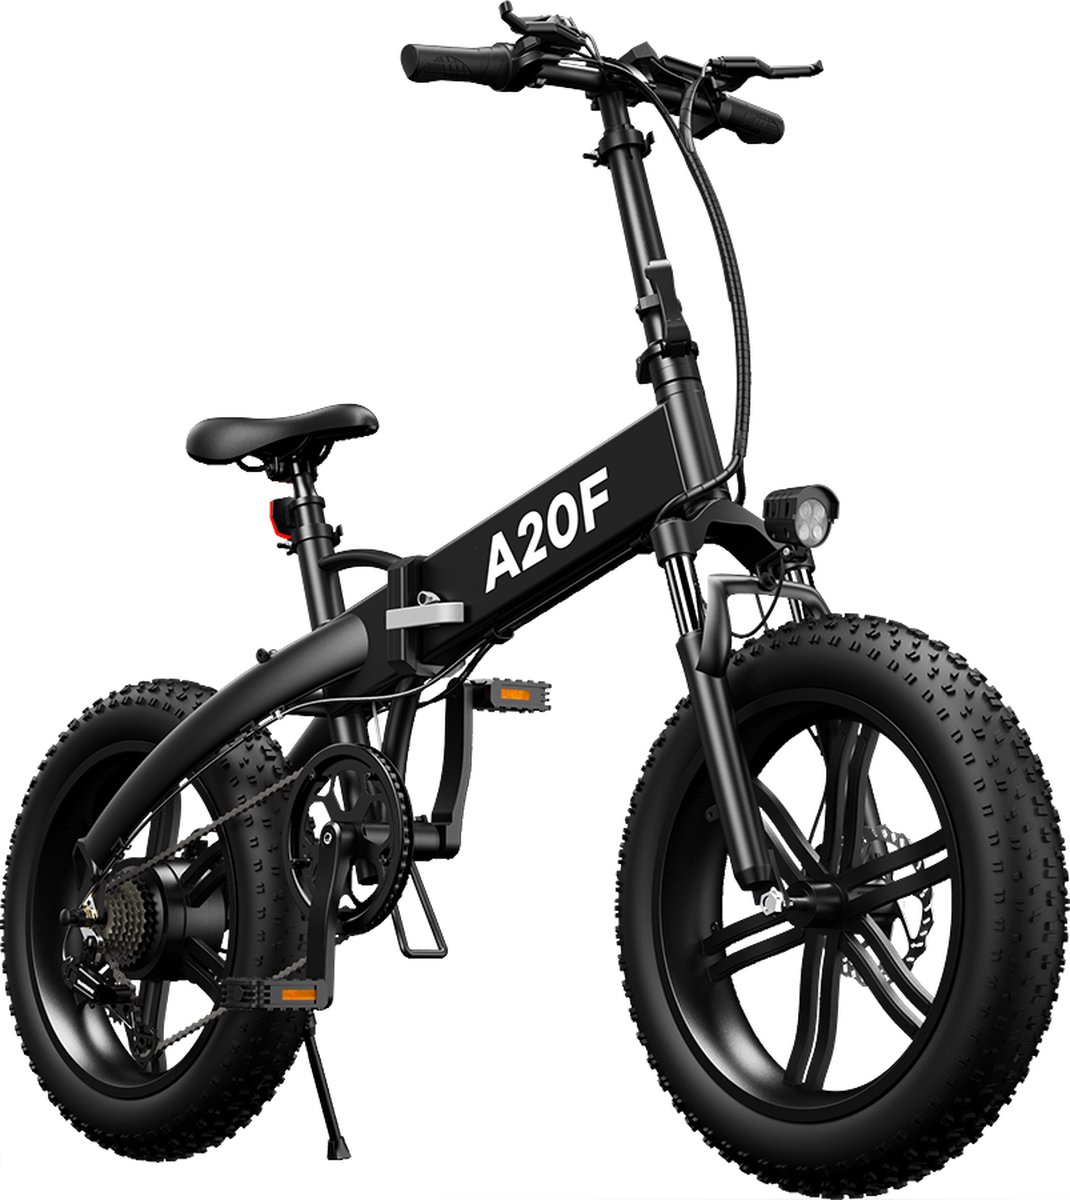 Ado Stay-on ADO Stay on A20F E Bike Elektrische Vouwfiets Fatbike Shimano 7 Versnellingen 20 Inch Zwart online kopen